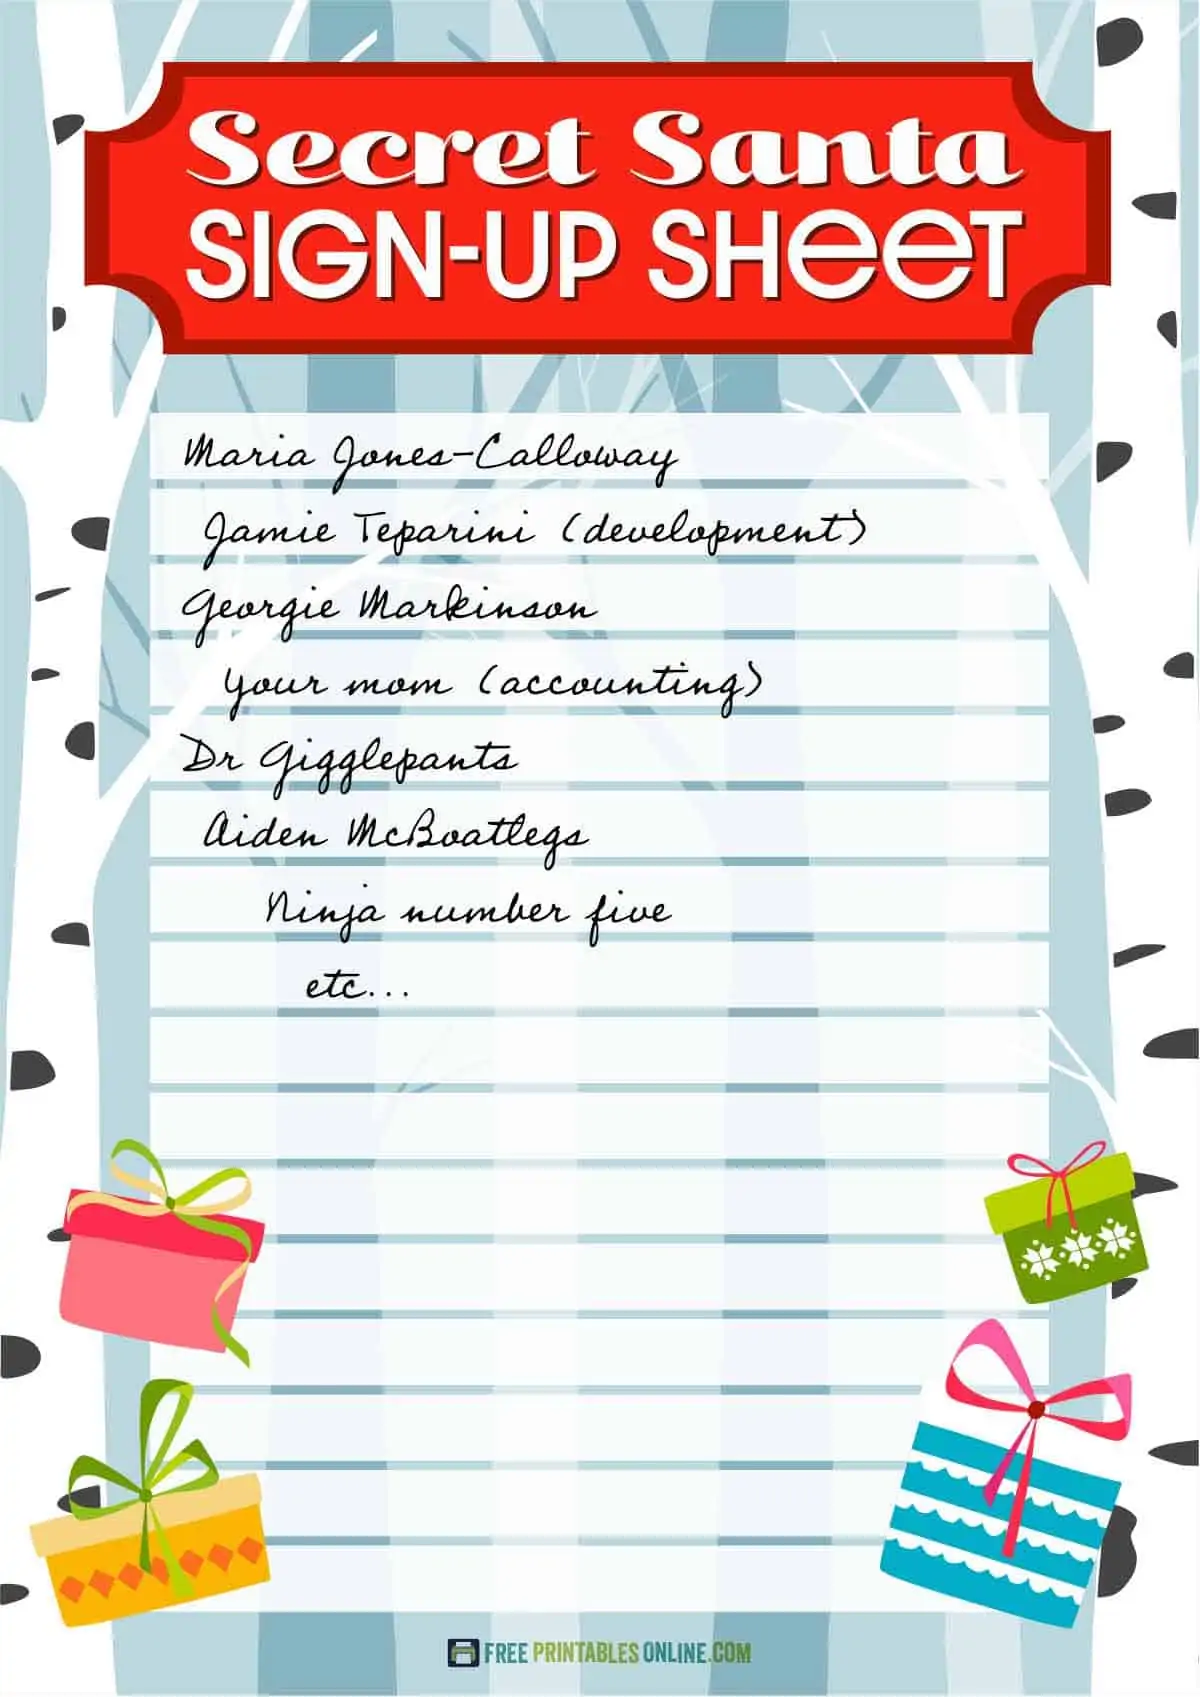 Printable secret Santa sign up sheet Free Printables Online